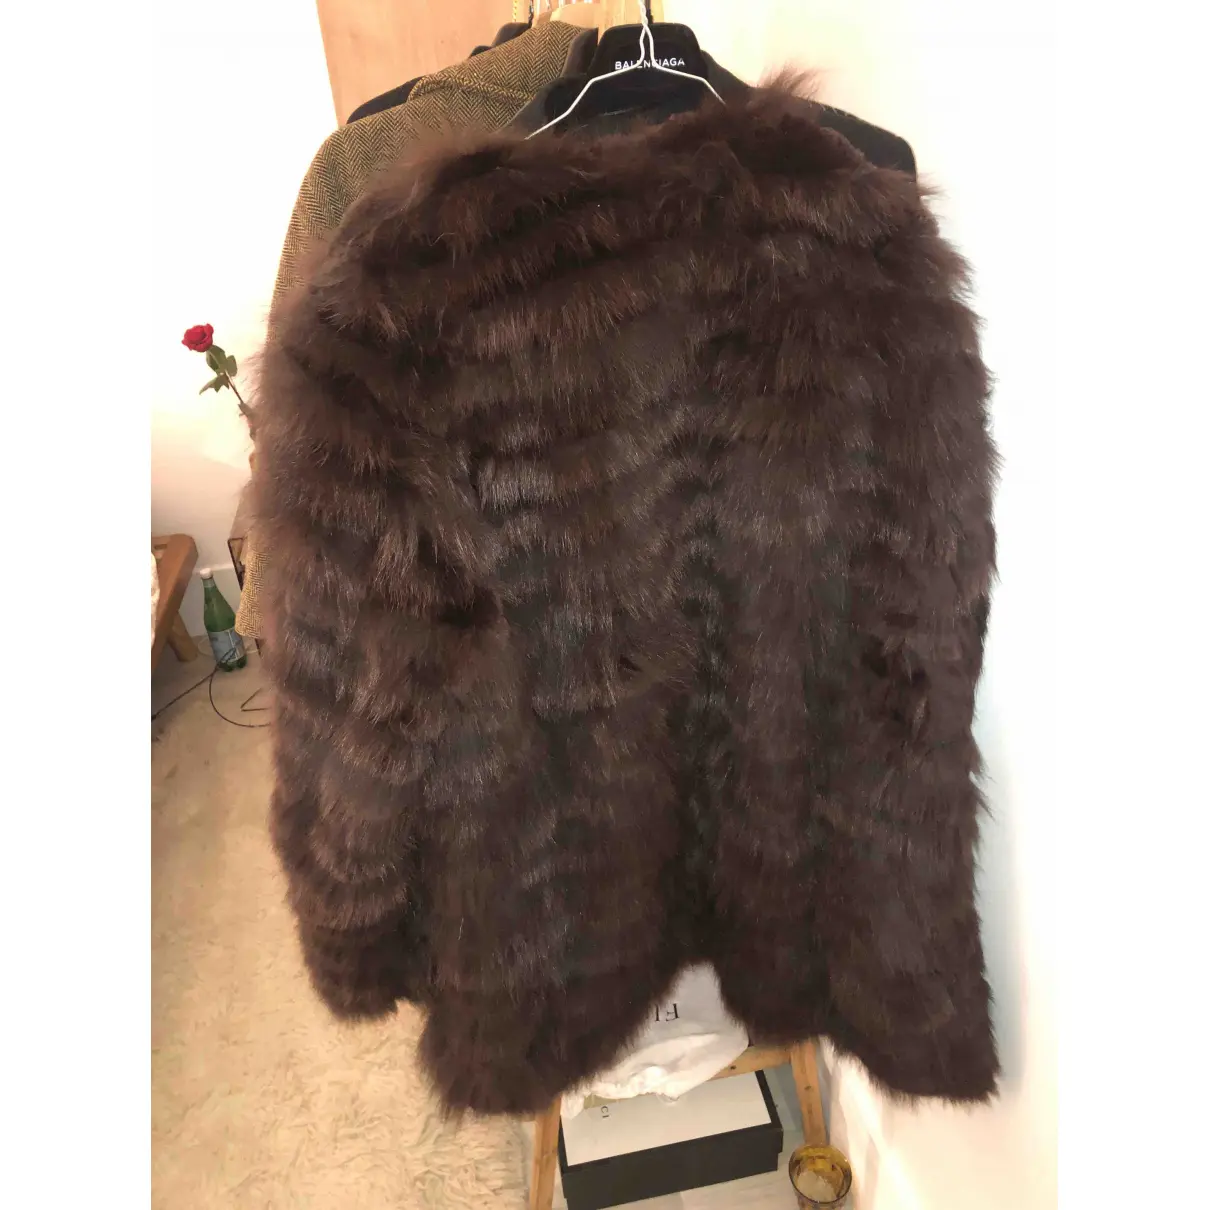 Buy Sprung Frères Rabbit coat online